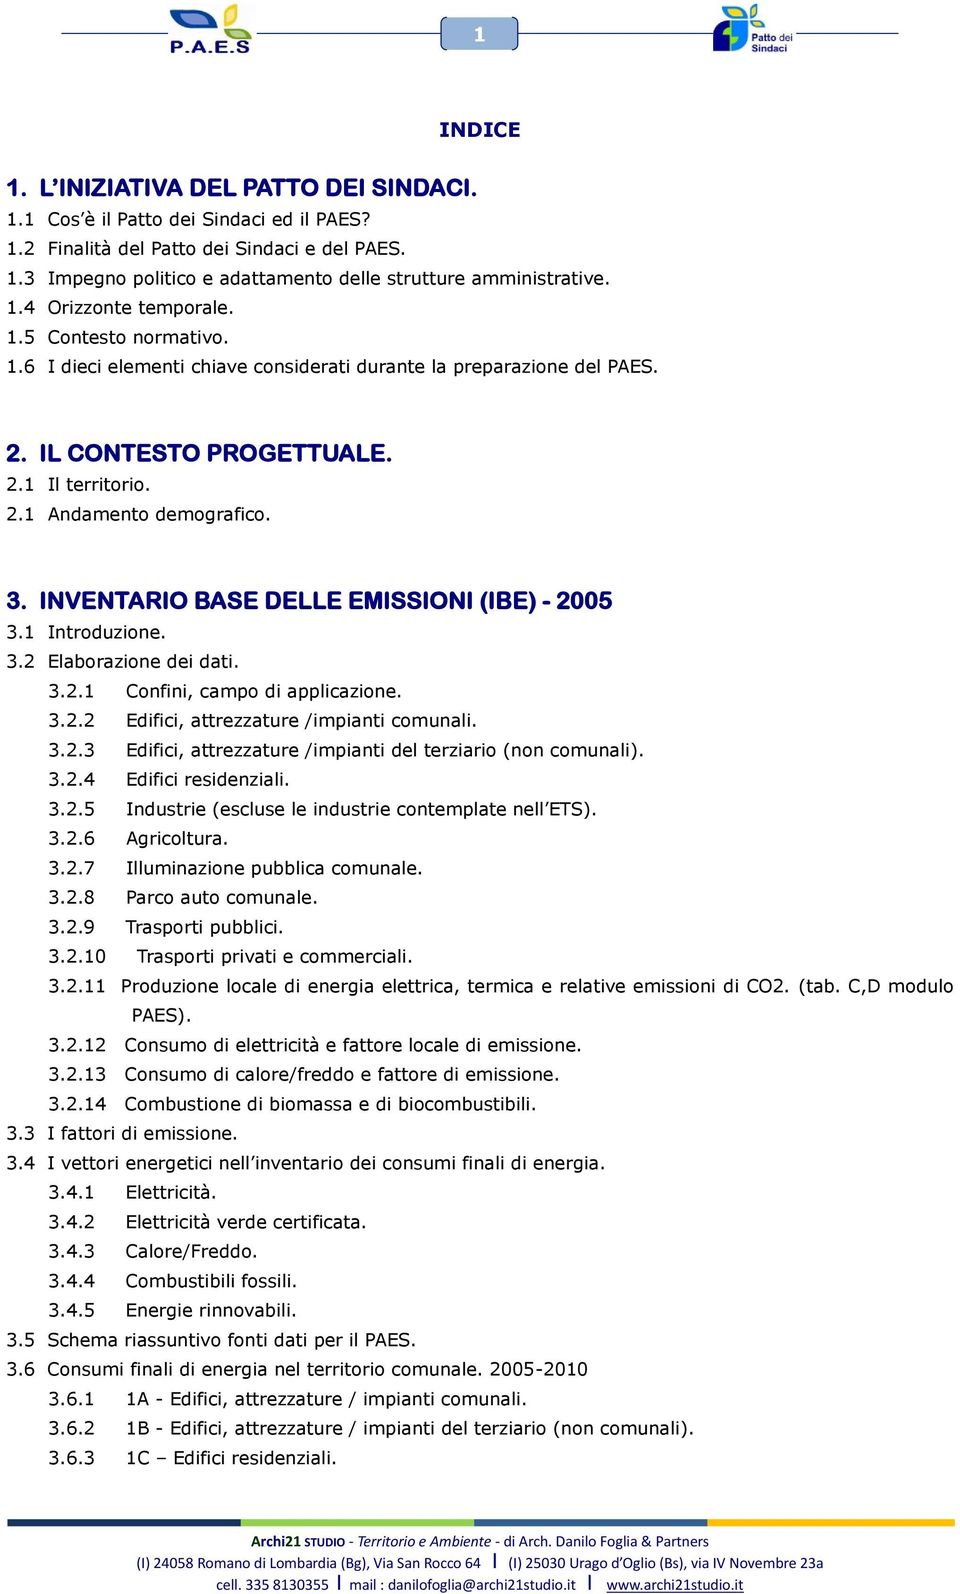 INVENTARIO BASE DELLE EMISSIONI (IBE) - 2005 3.1 Introduzione. 3.2 Elaborazione dei dati. 3.2.1 Confini, campo di applicazione. 3.2.2 Edifici, attrezzature /impianti comunali. 3.2.3 Edifici, attrezzature /impianti del terziario (non comunali).